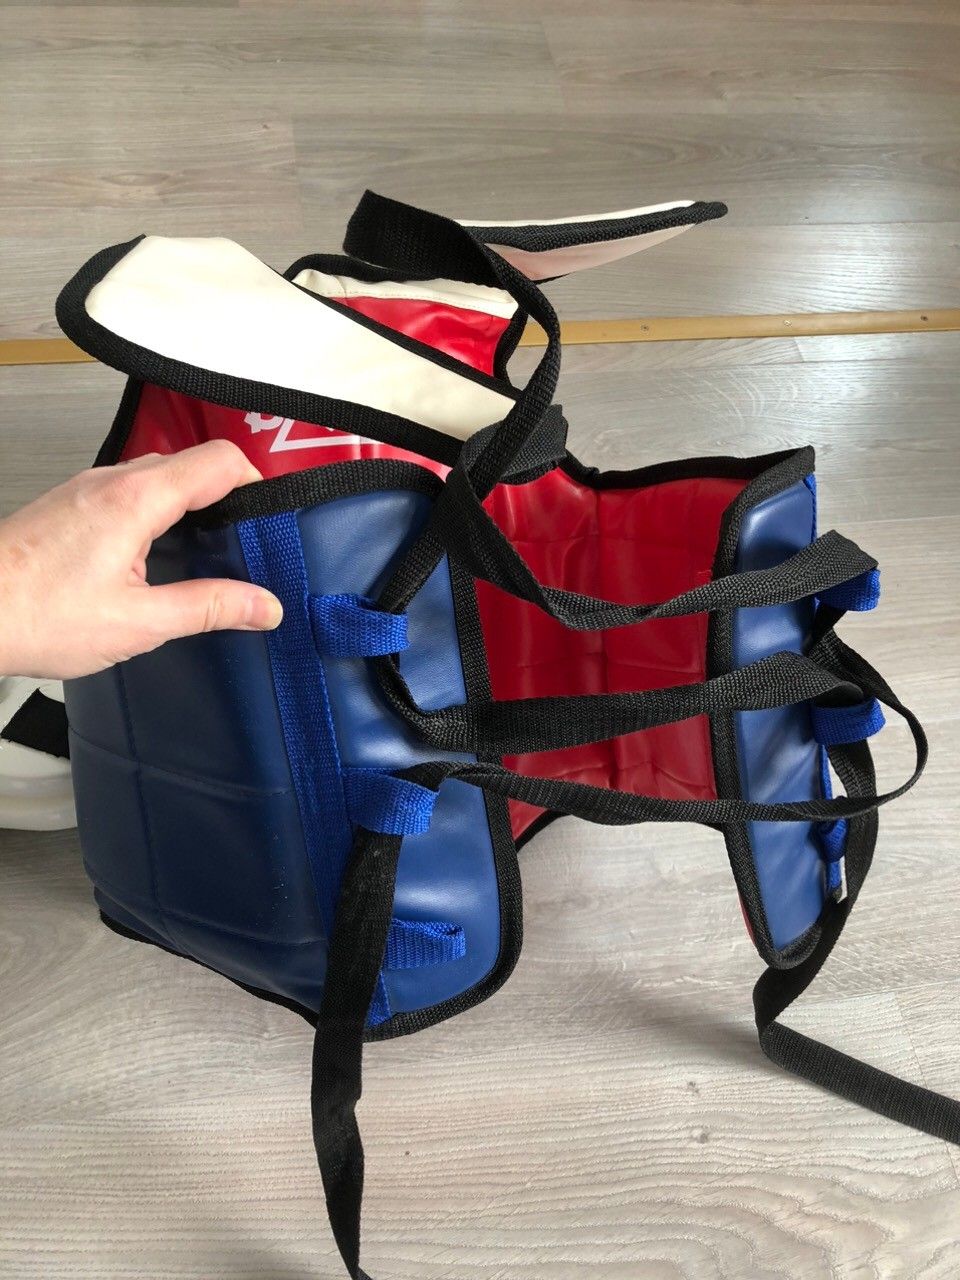 Taekwondo-rintapanssari ja kypärä